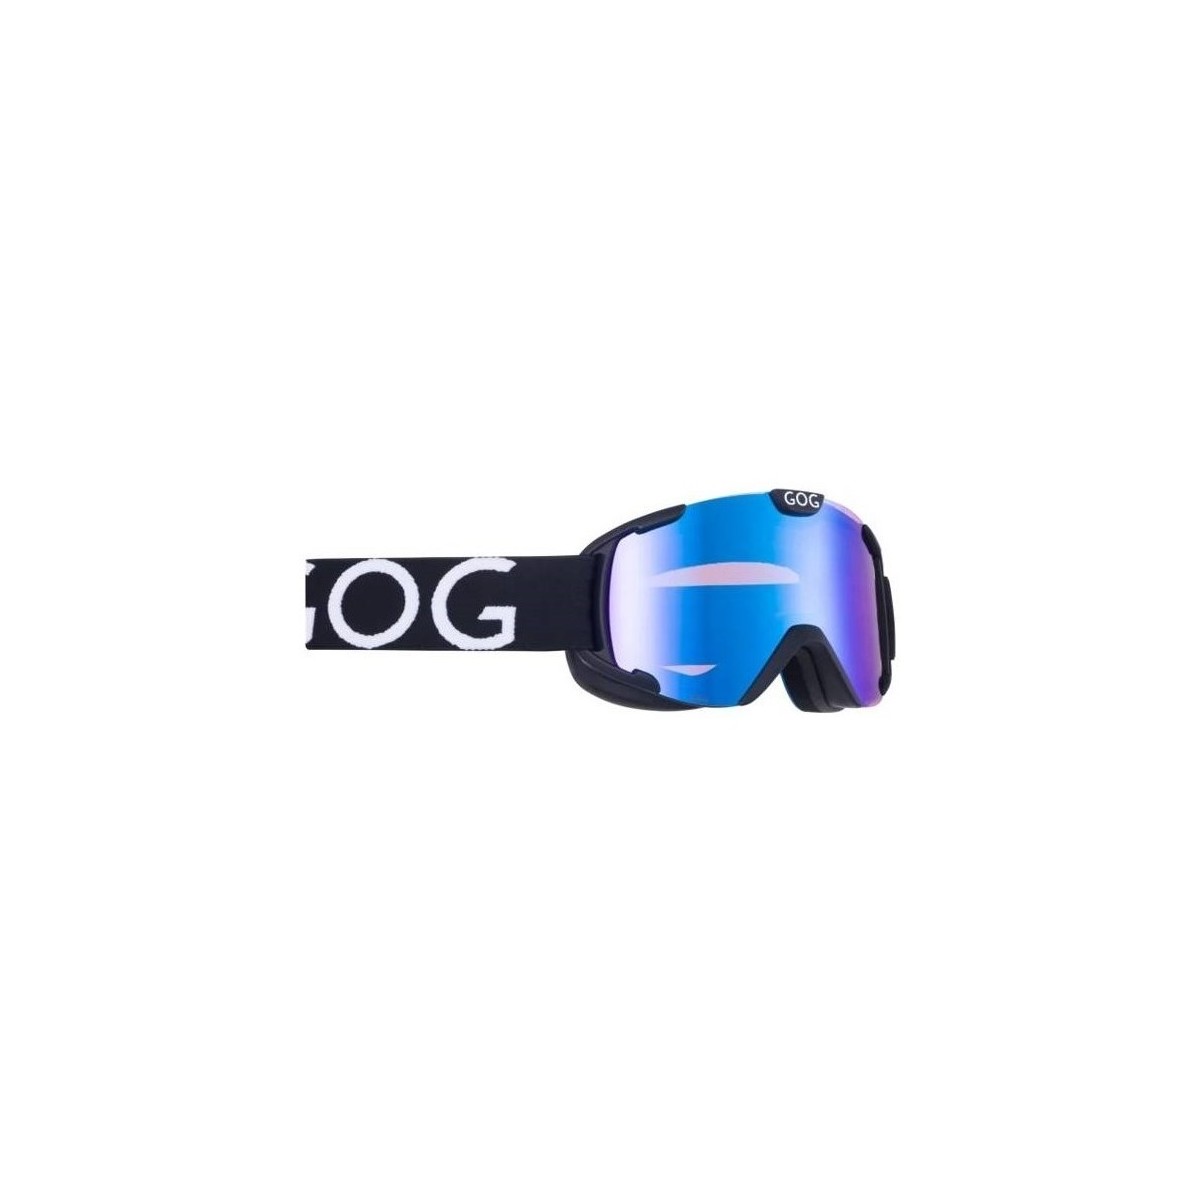 Accessoarer Dam Sportaccessoarer Goggle Gog Nebula Svart